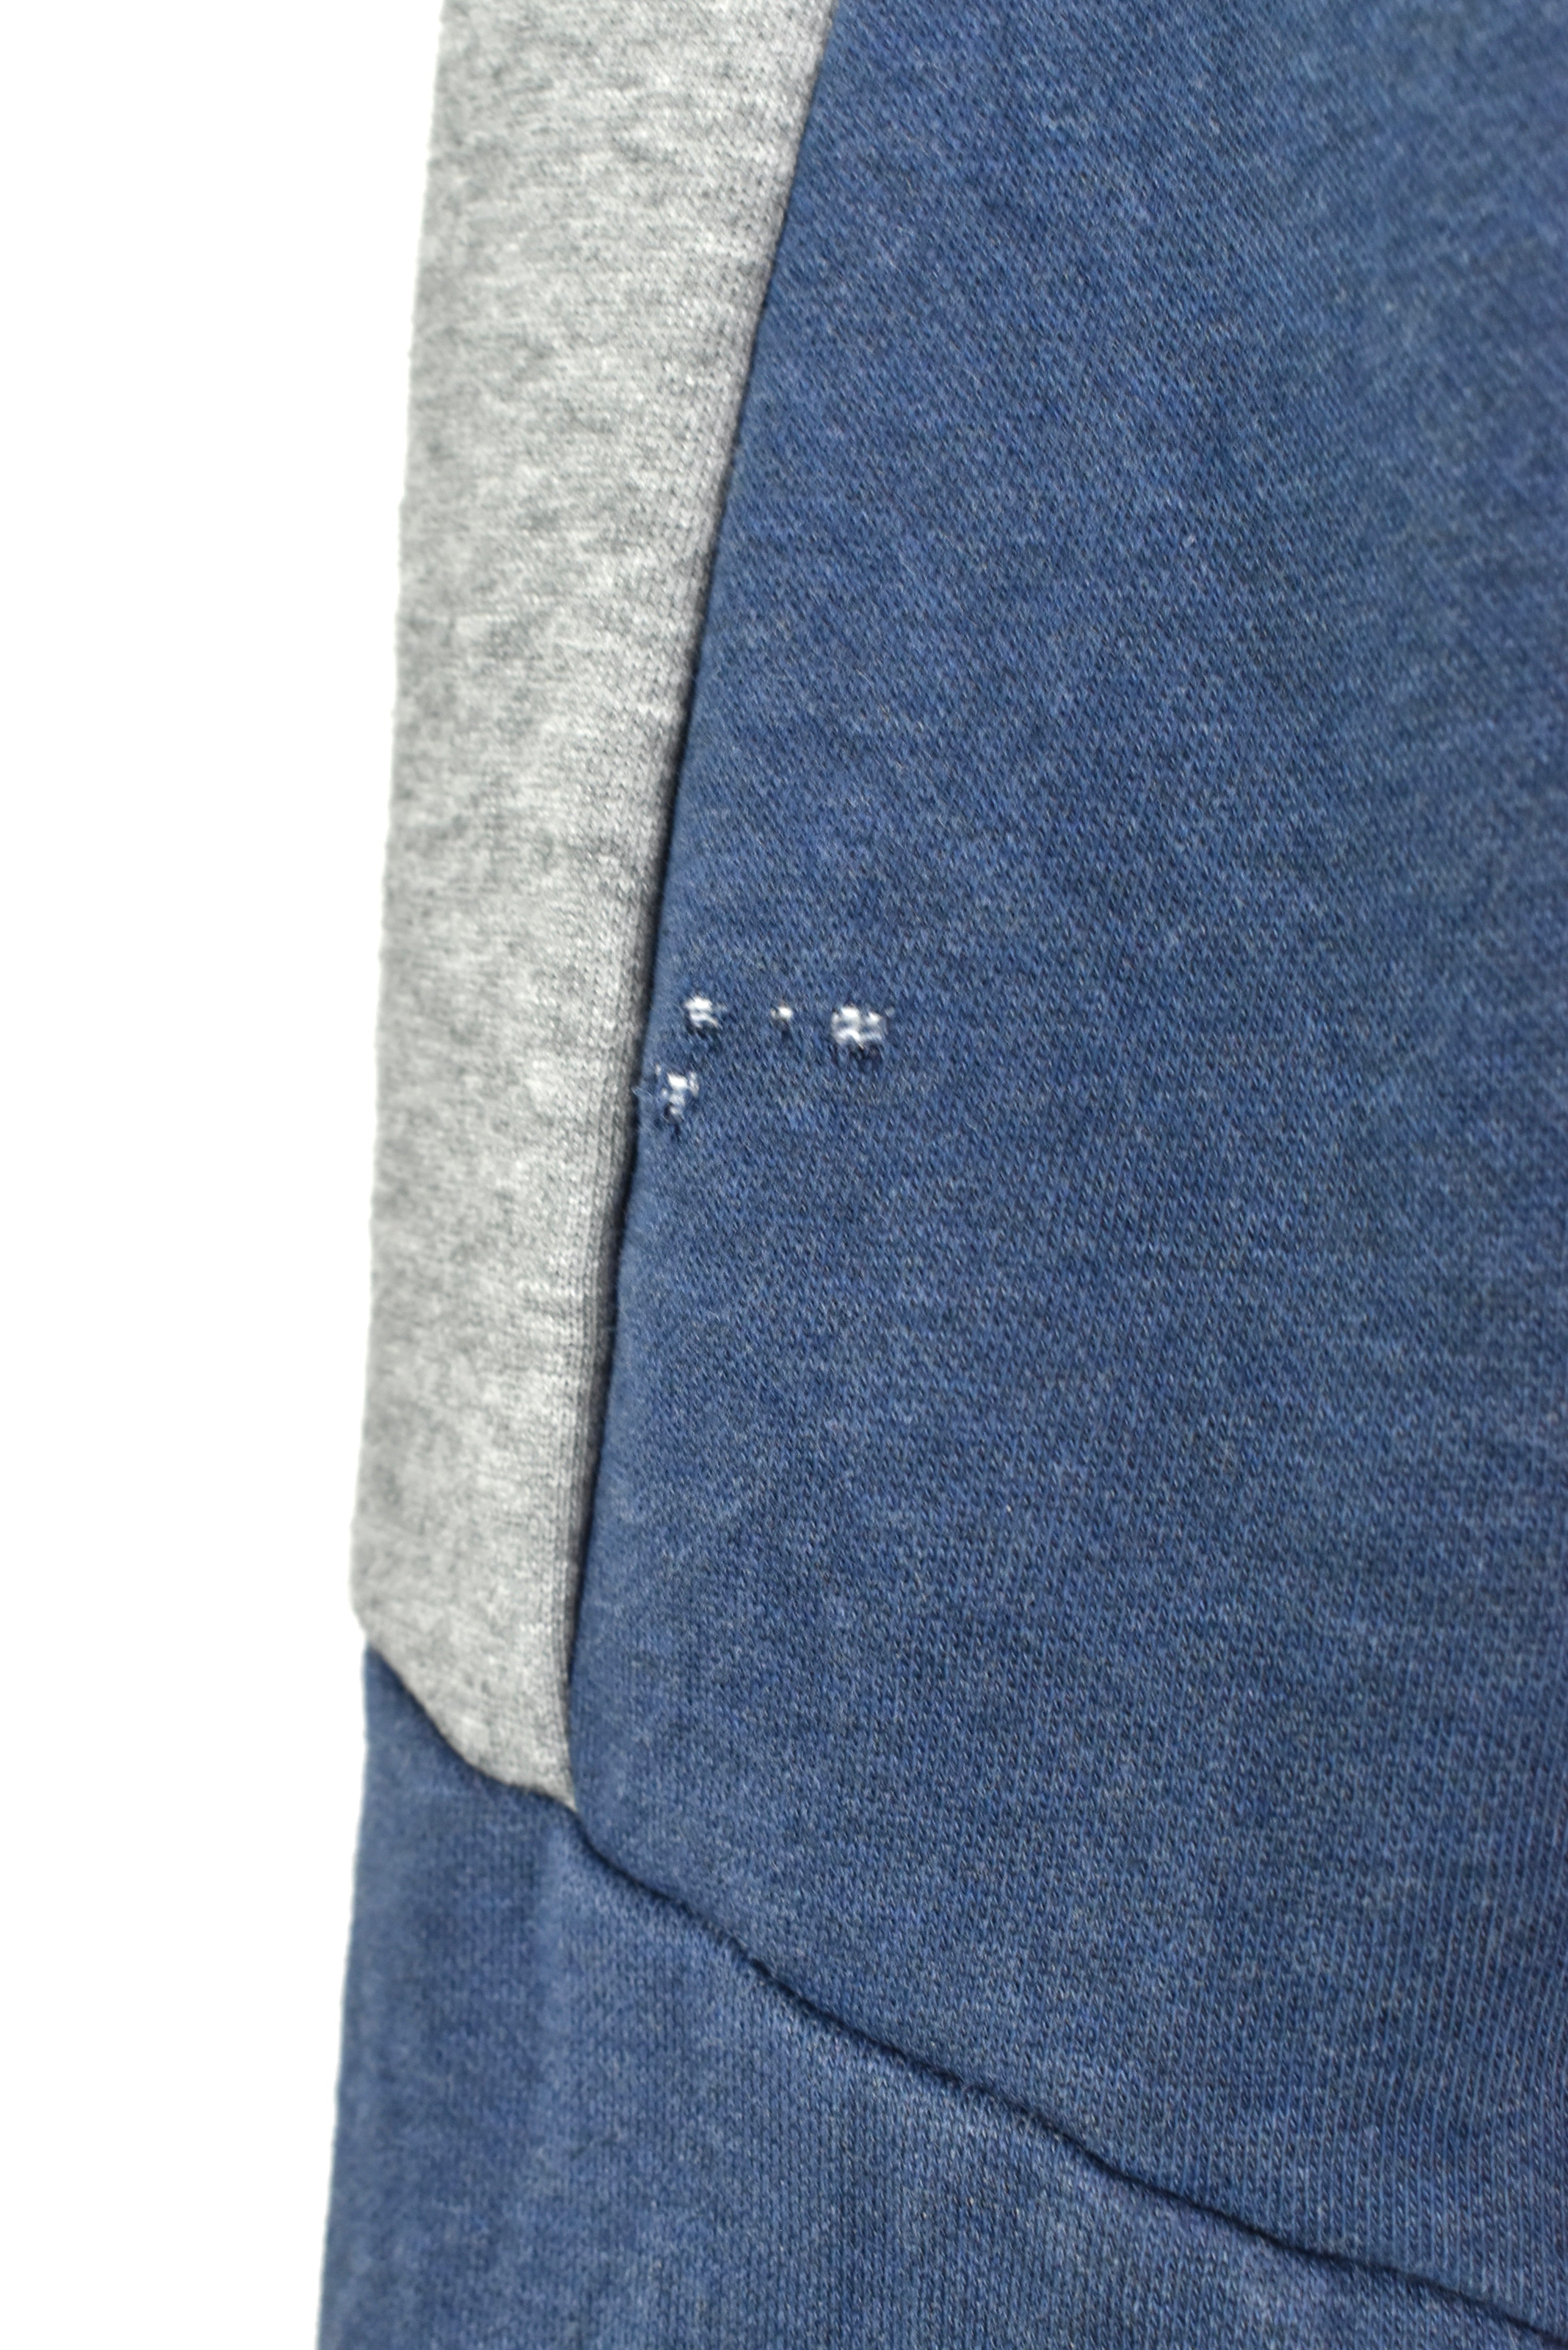 Vintage Puma sweatshirt, long sleeve blue embroidered jacket - AU L PUMA